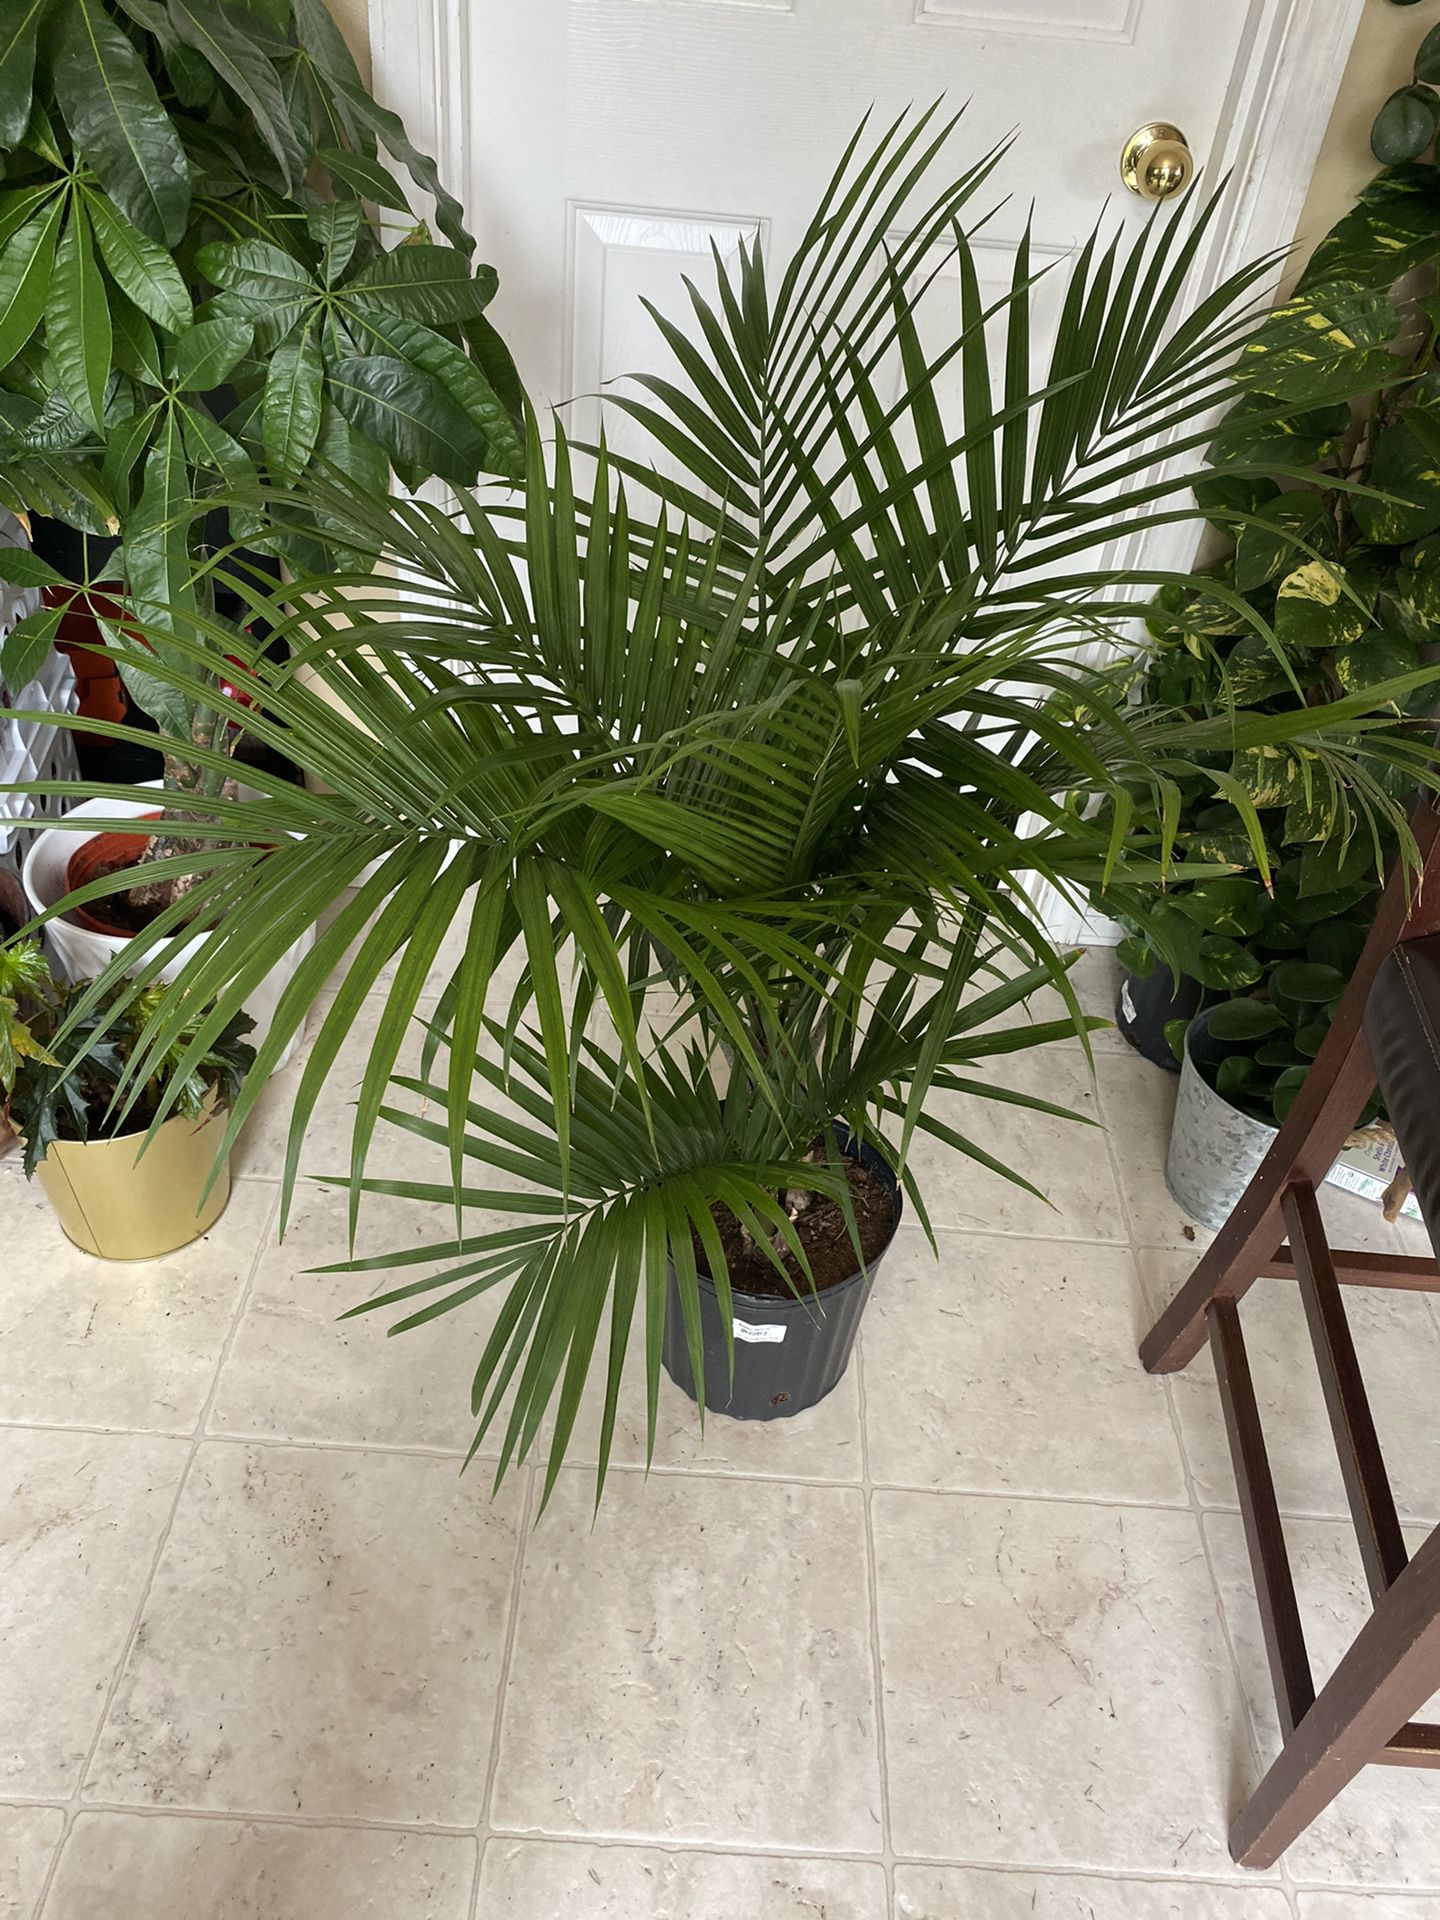 Majesty palm plant live